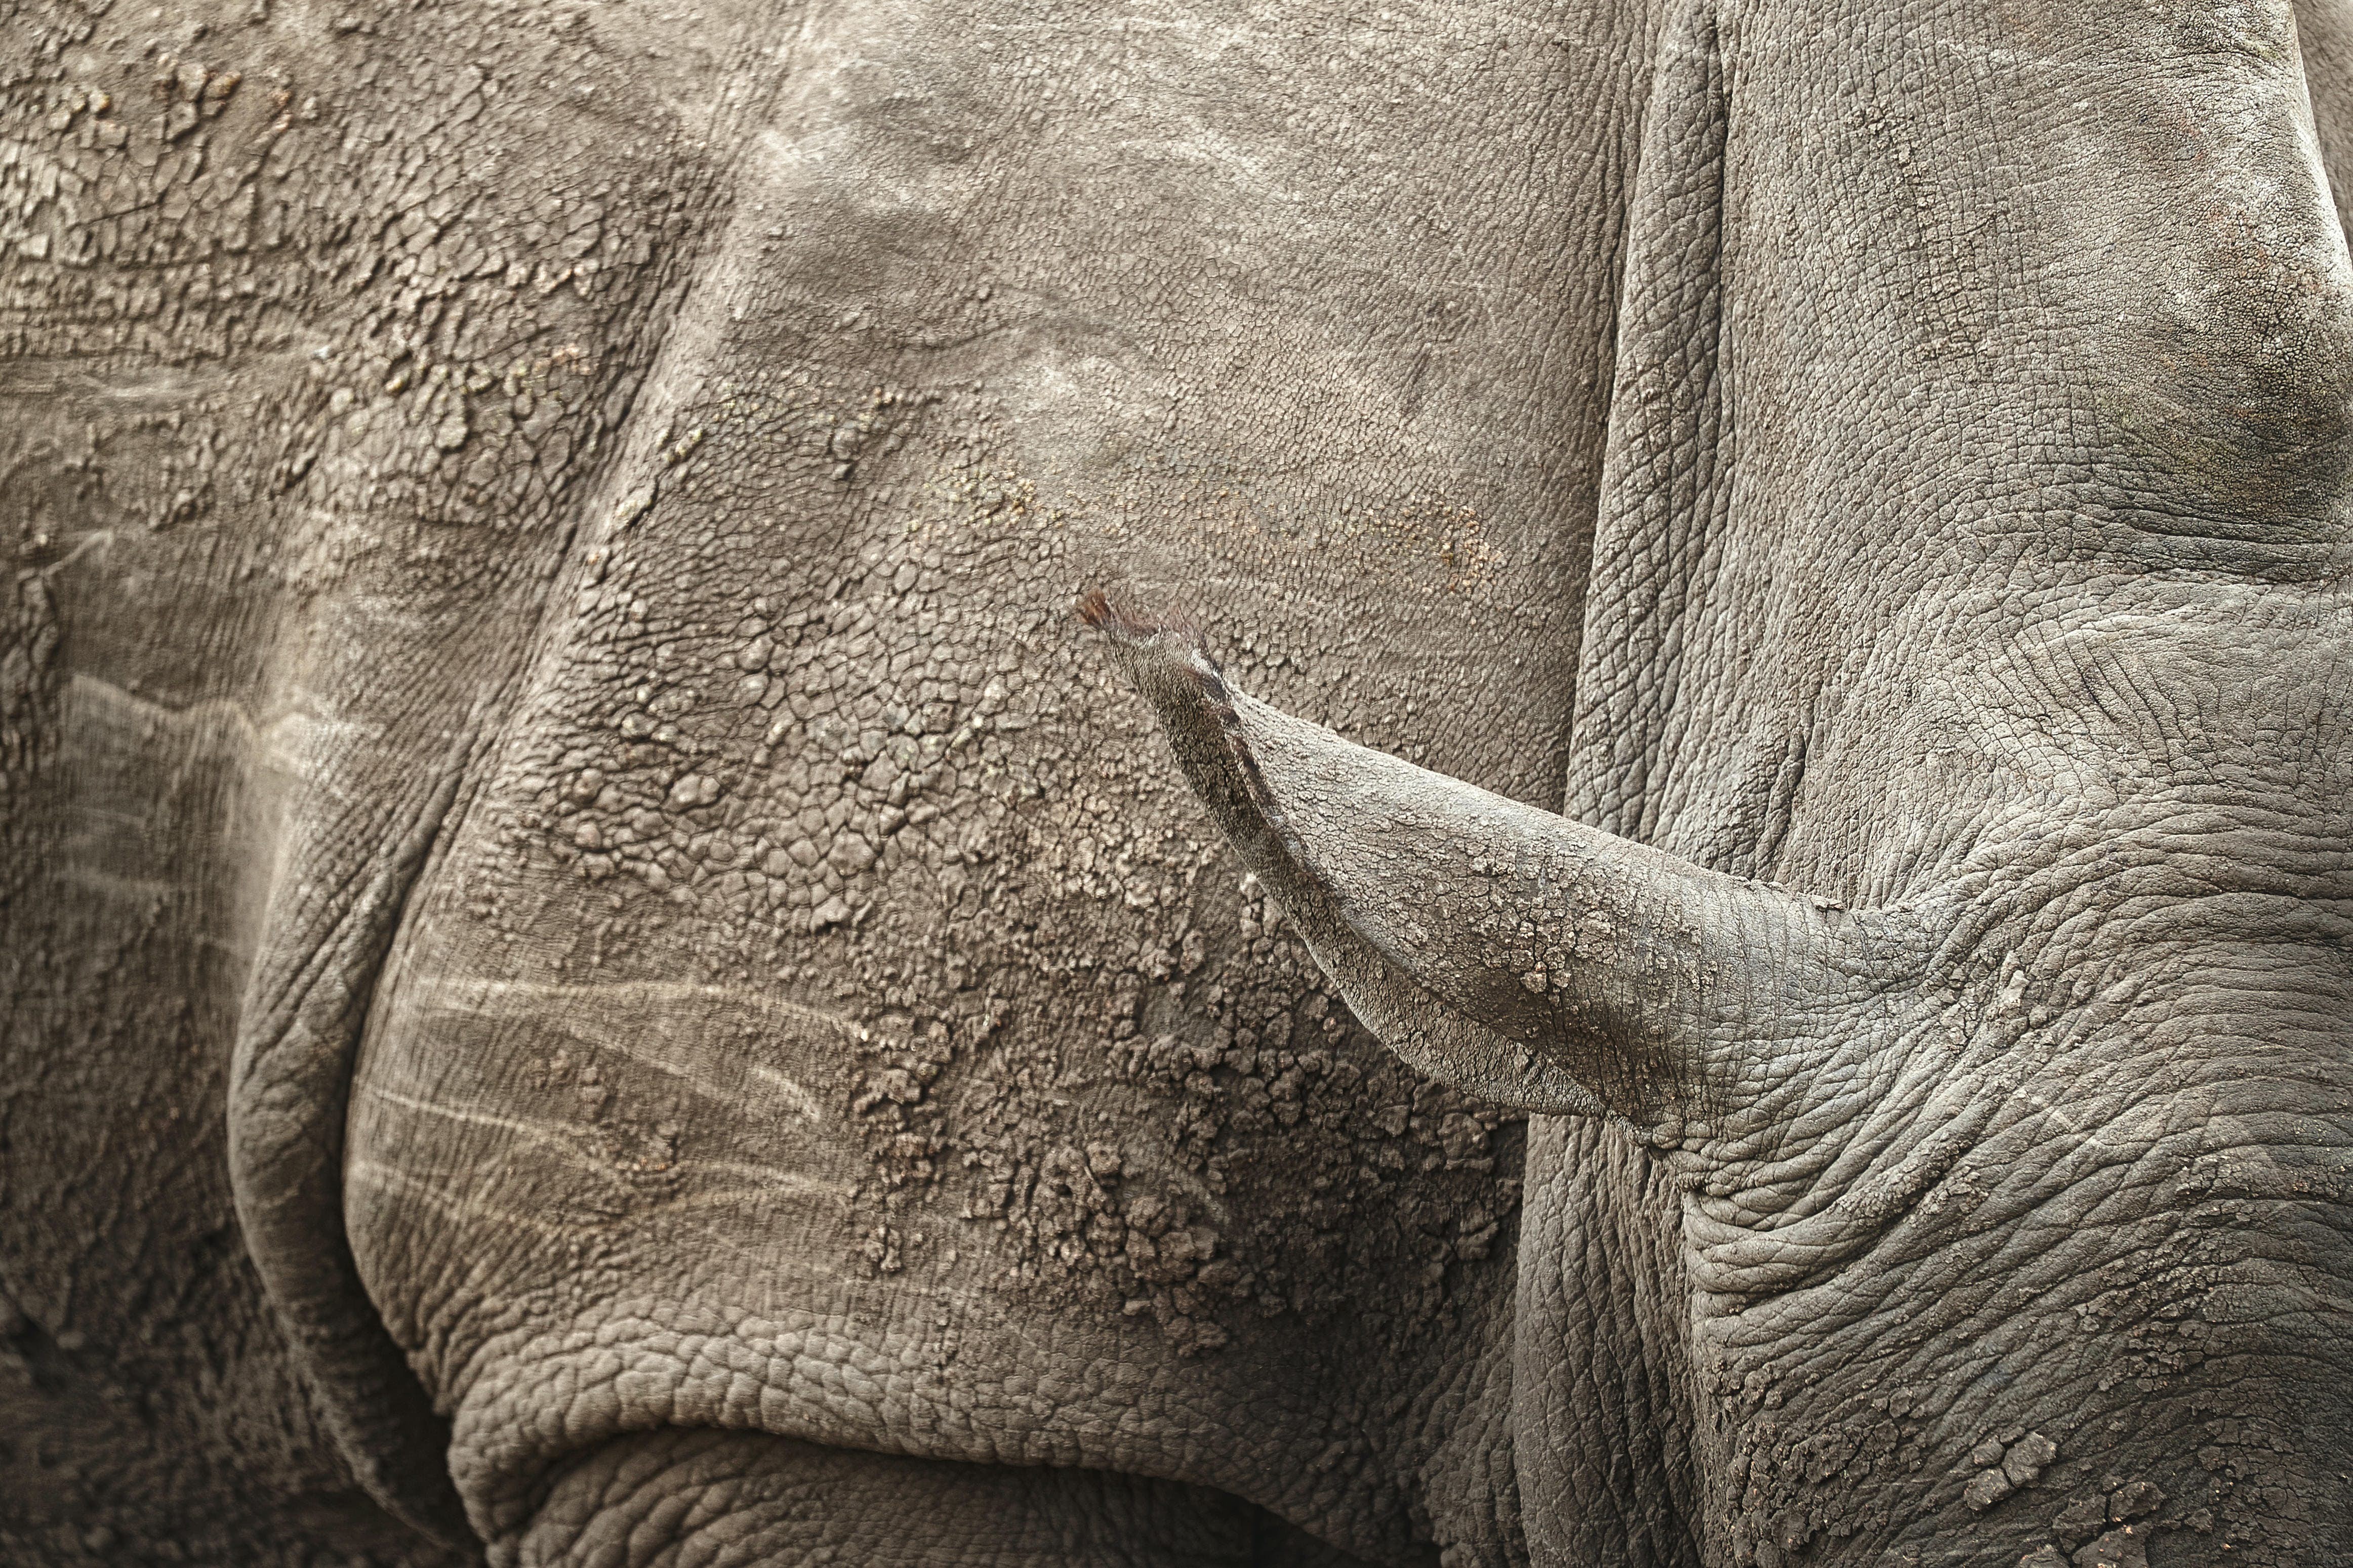 Como os caçadores de rinocerontes se aproveitaram da pandemia - e como você pode ajudar a detê-los 